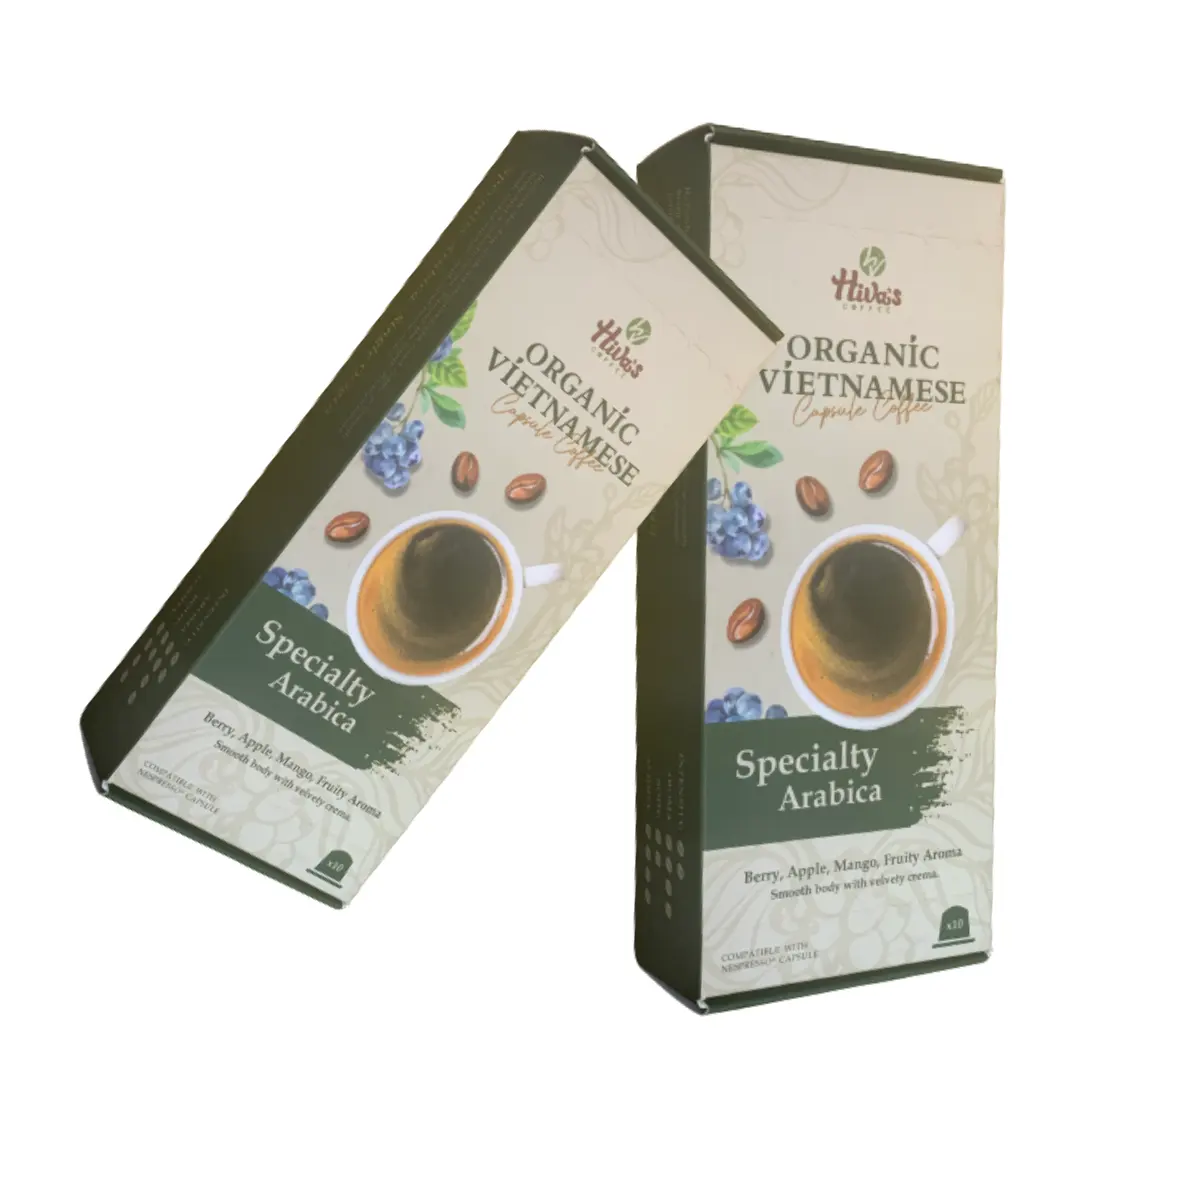 カプセルコーヒーネスプレッソ特産品アラビカミディアムダークロースト挽いたコーヒーOEM Hiva's coffee